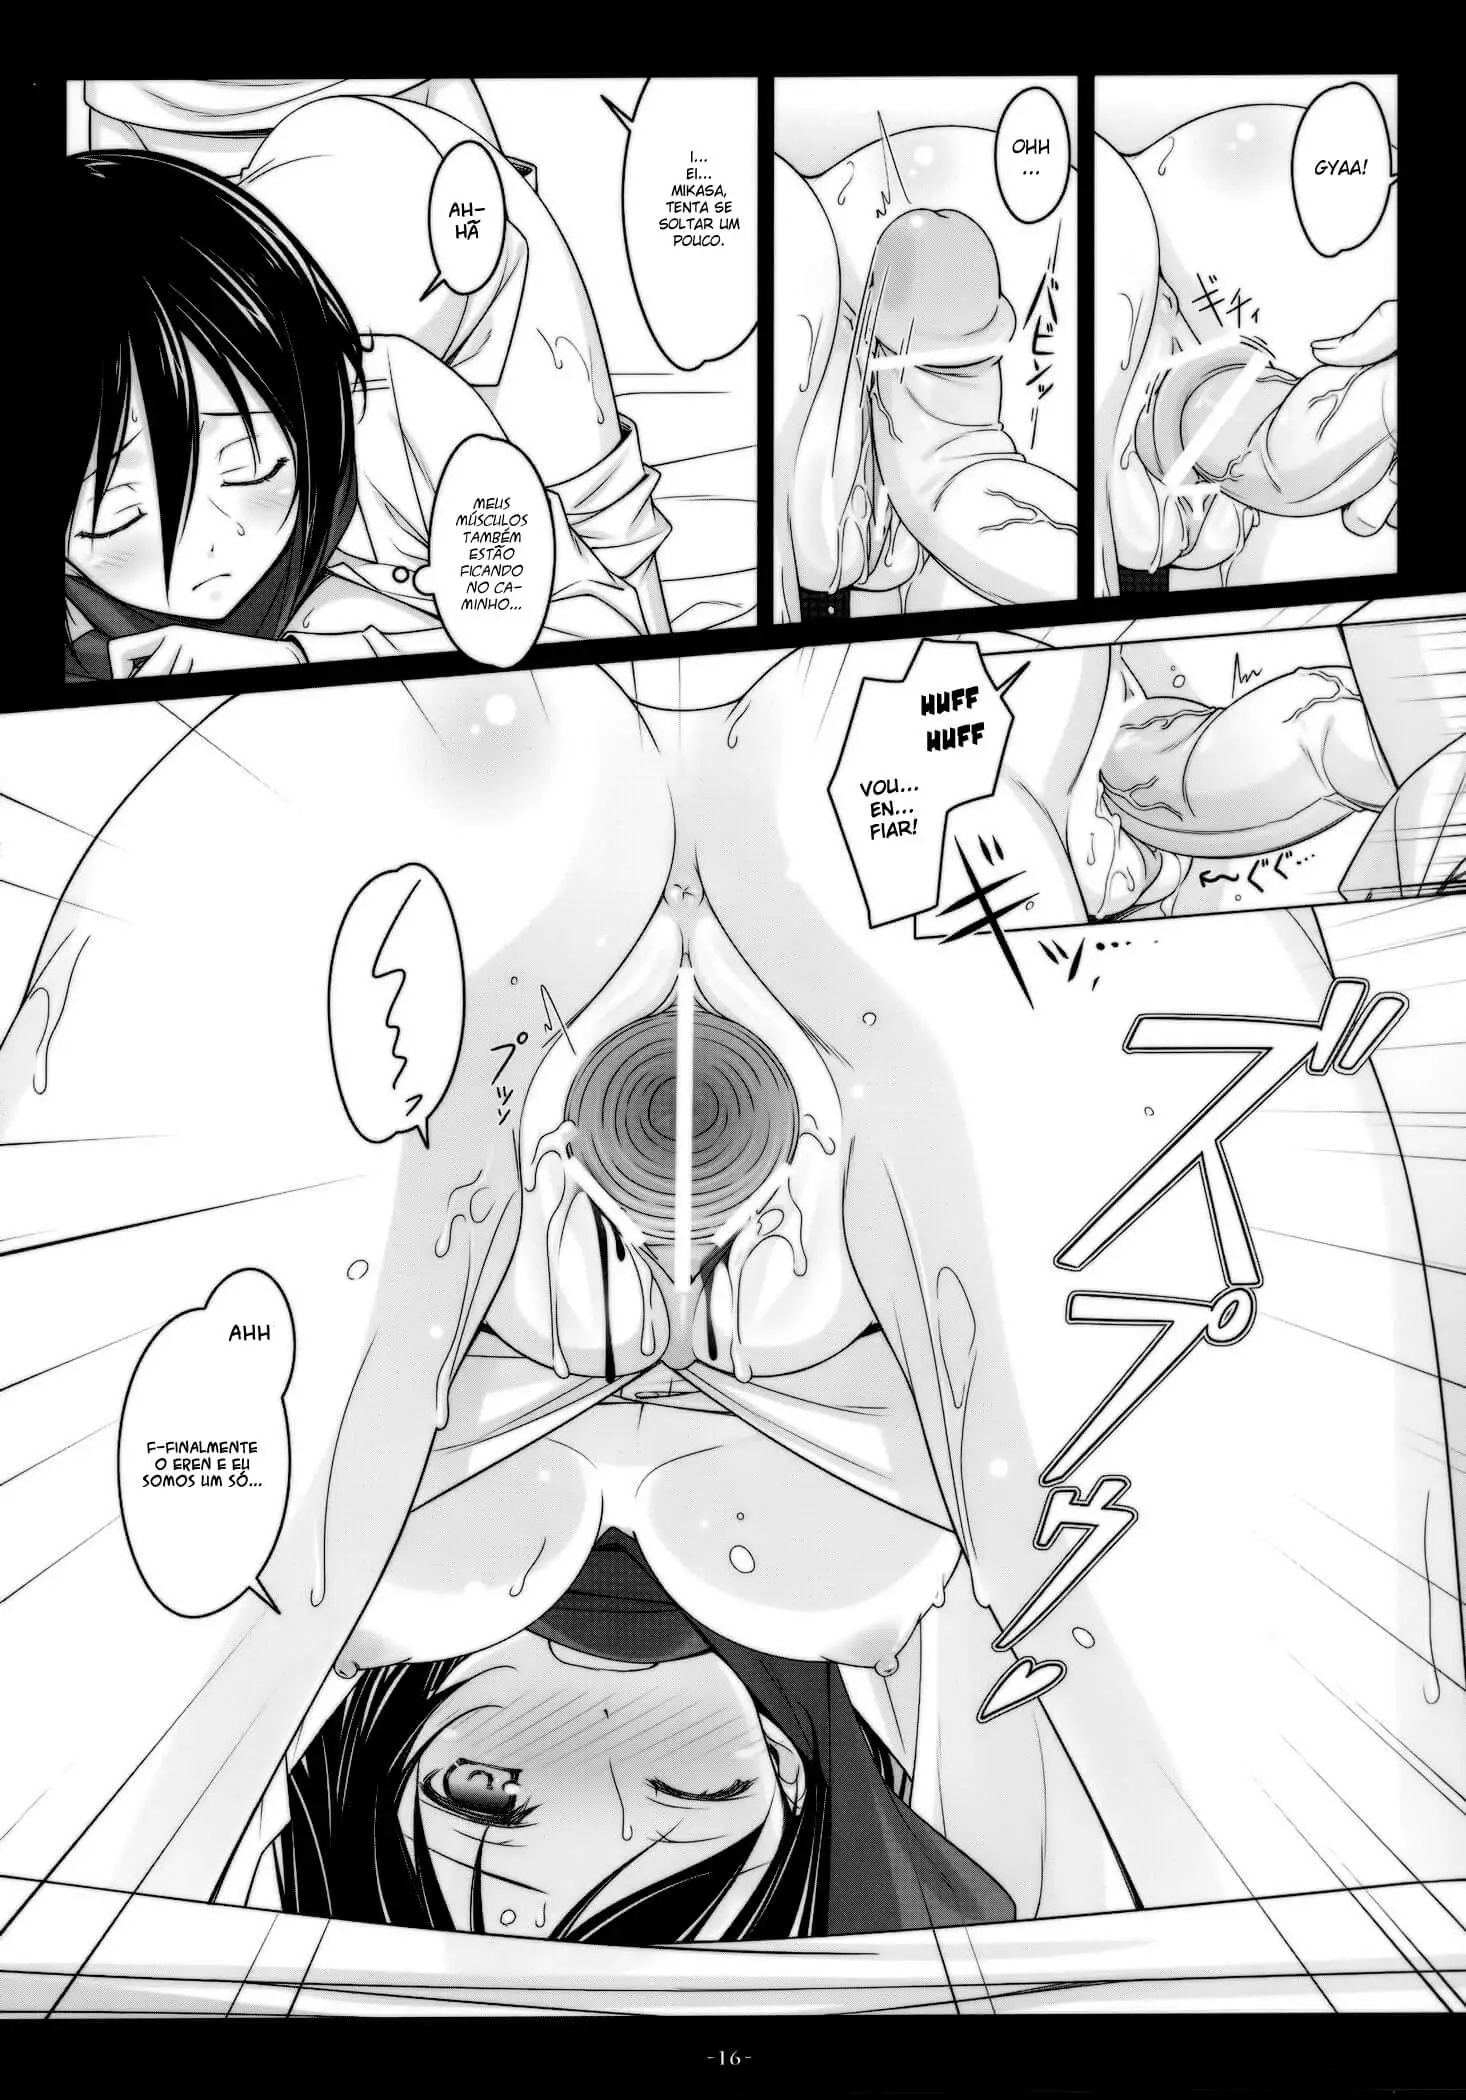 Mikasa Hentai - Eren taking the gourd from Mikasa Ackerman